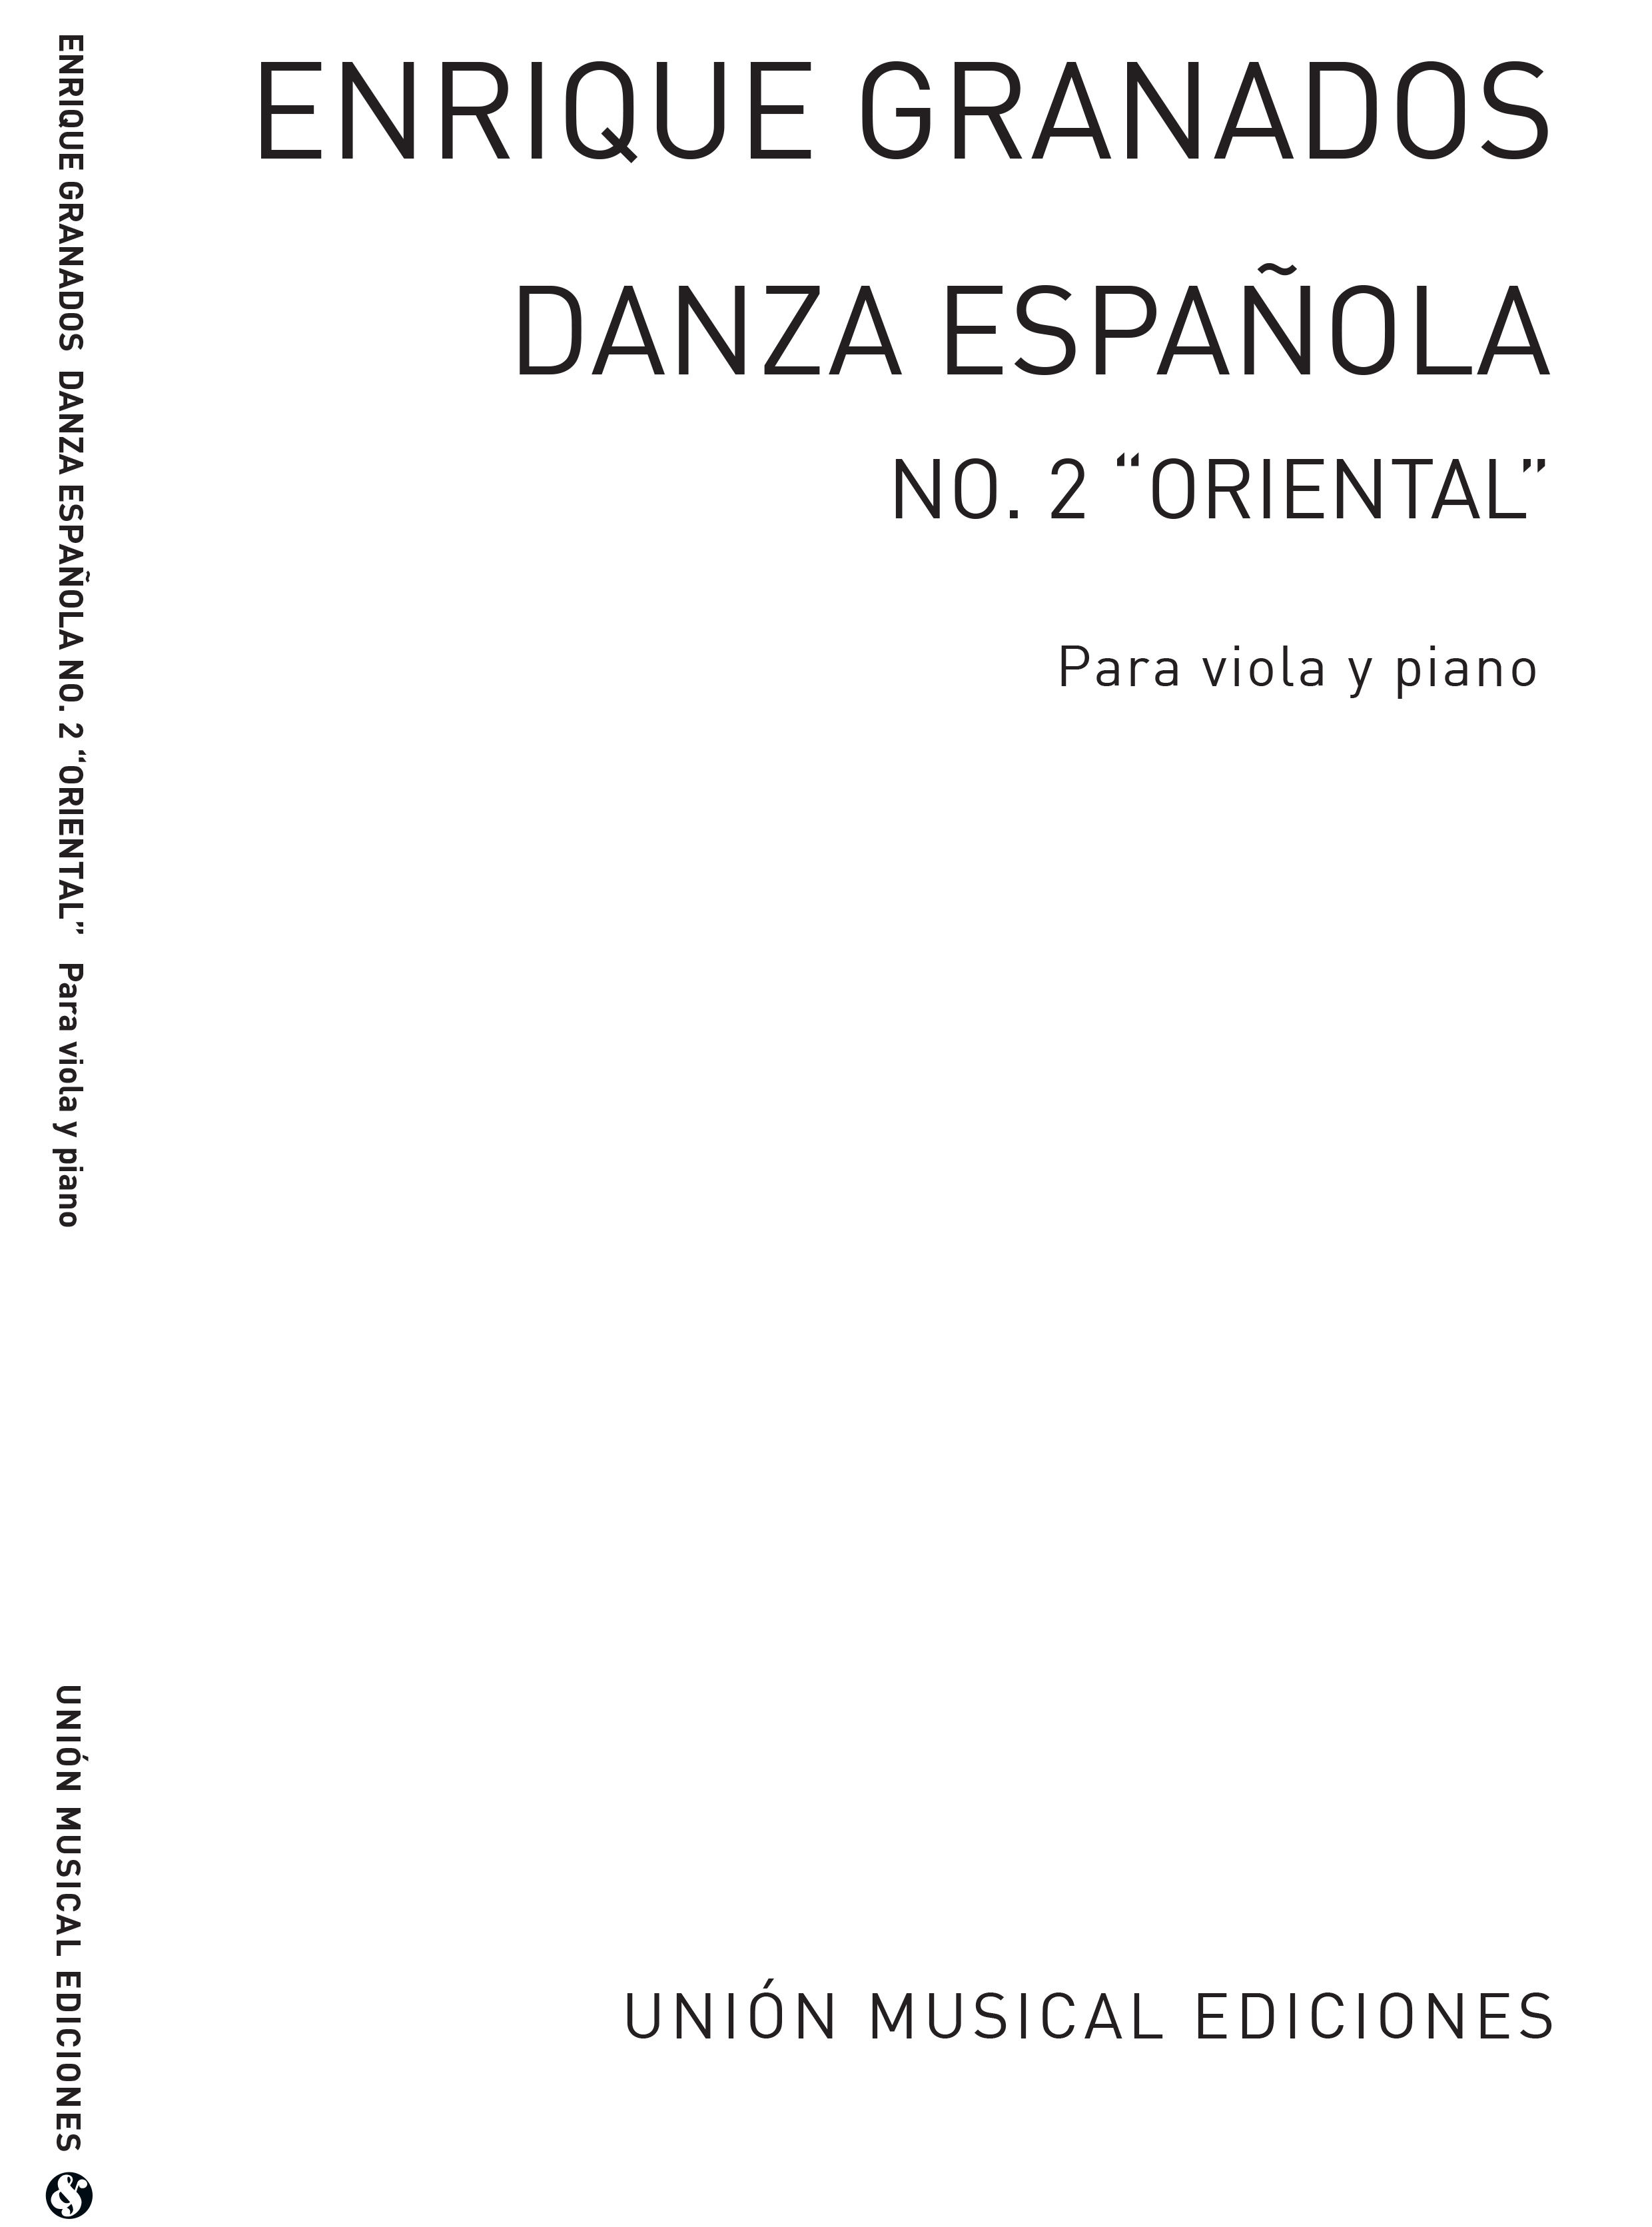 Enrique Granados: Danza Espanola No.2 - Oriental (Viola/Piano): Viola: